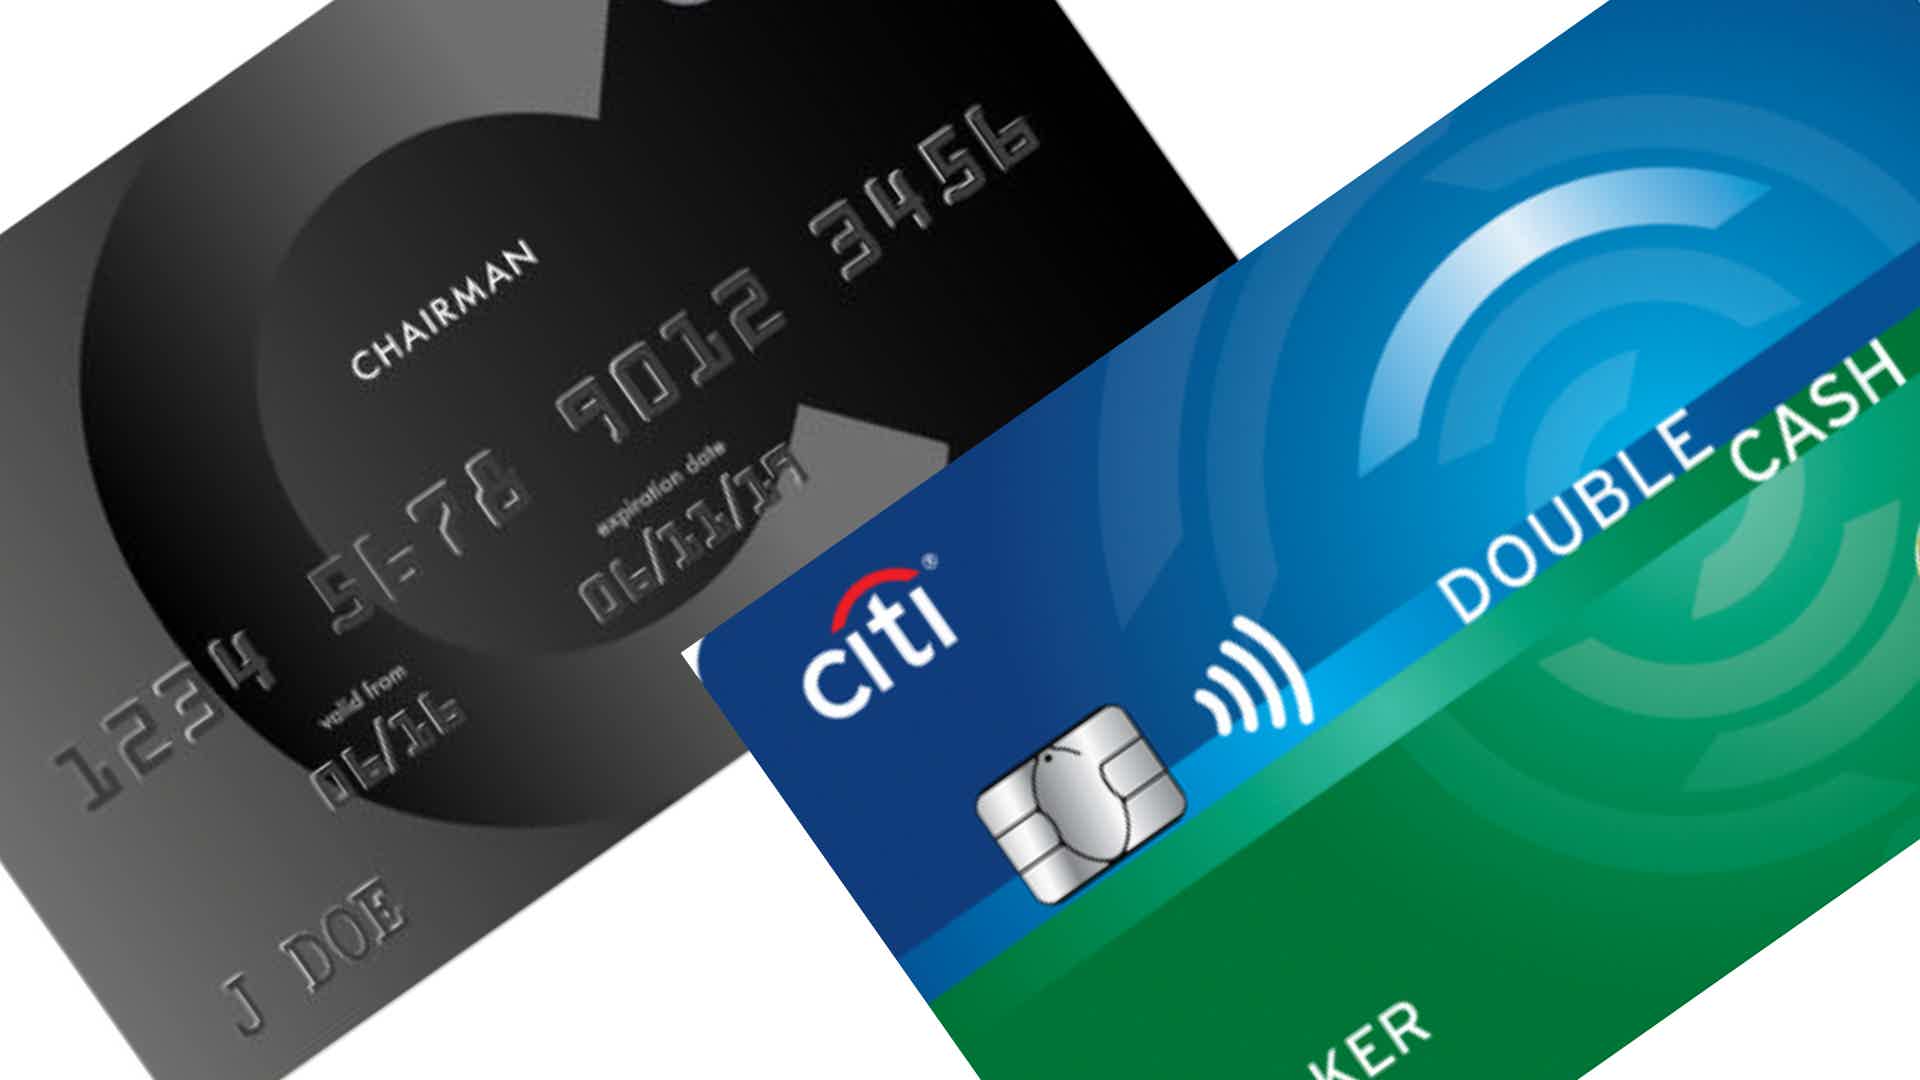 Comparação do cartão Citi Chairman American Express e cartão Citi Card Double Cash. Fonte: Citi.